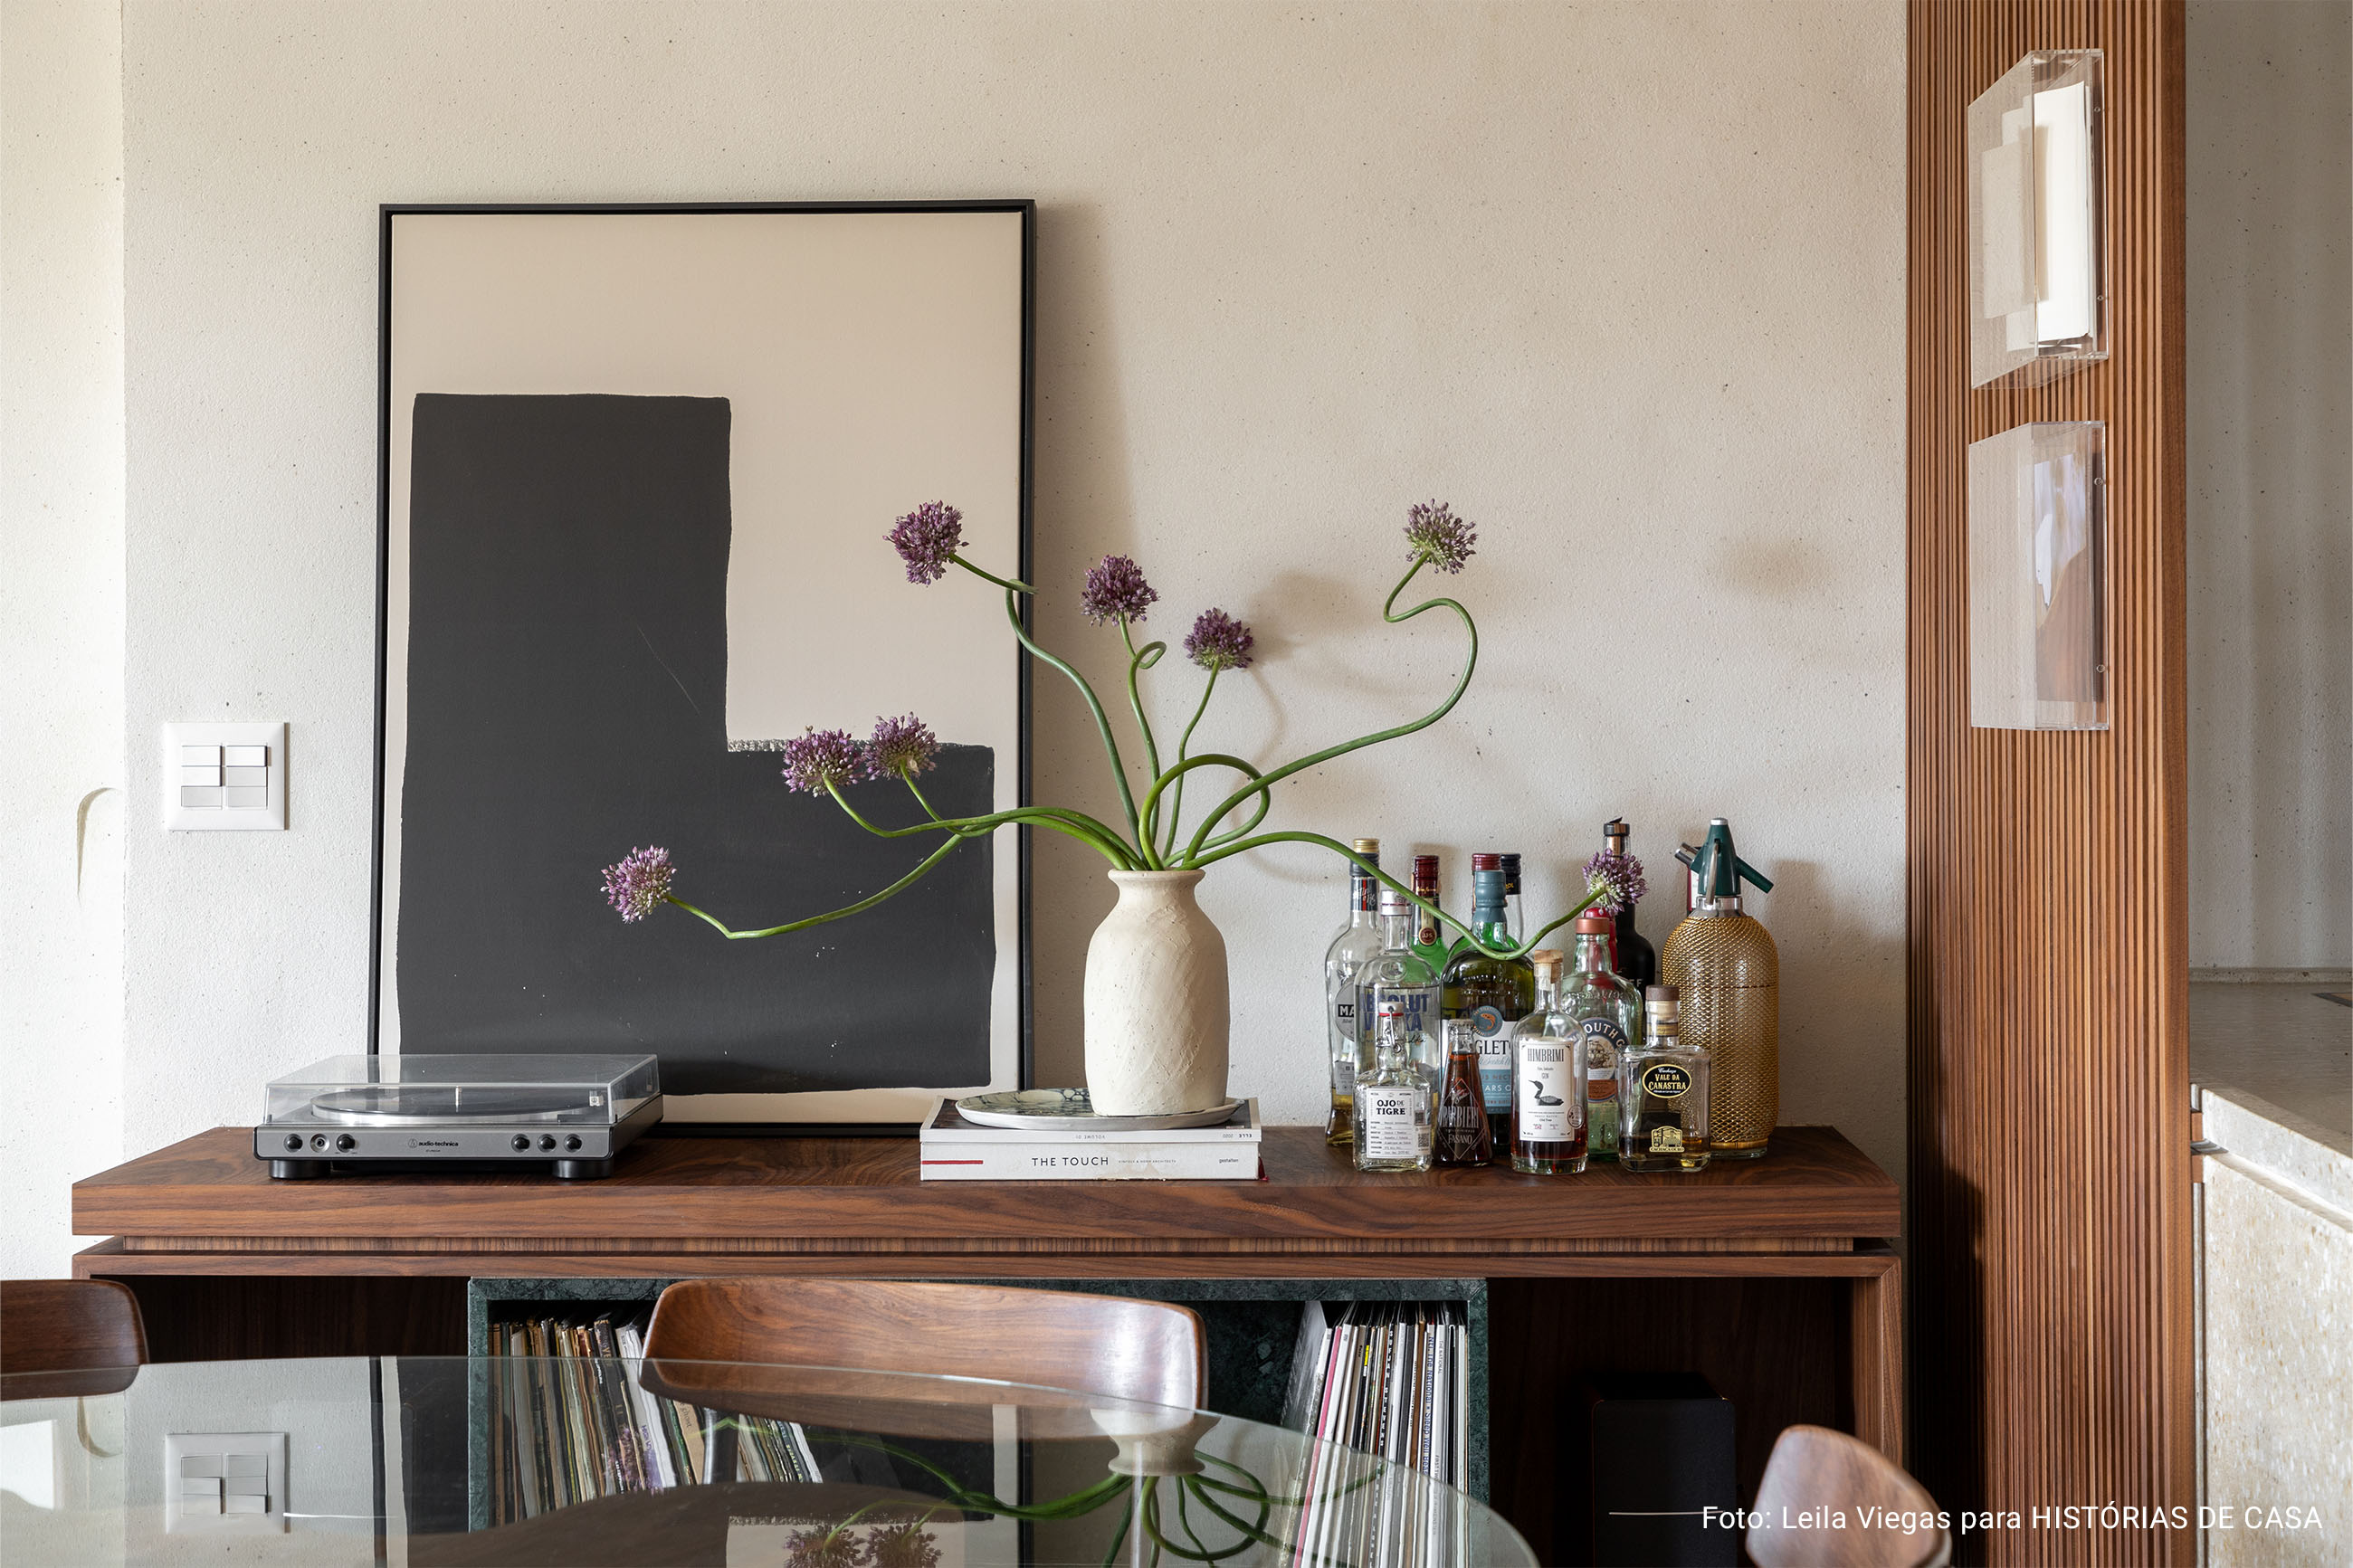 Apartamento com decoracão aconchegante e minimalista com cores neutras e quadros nas paredes.